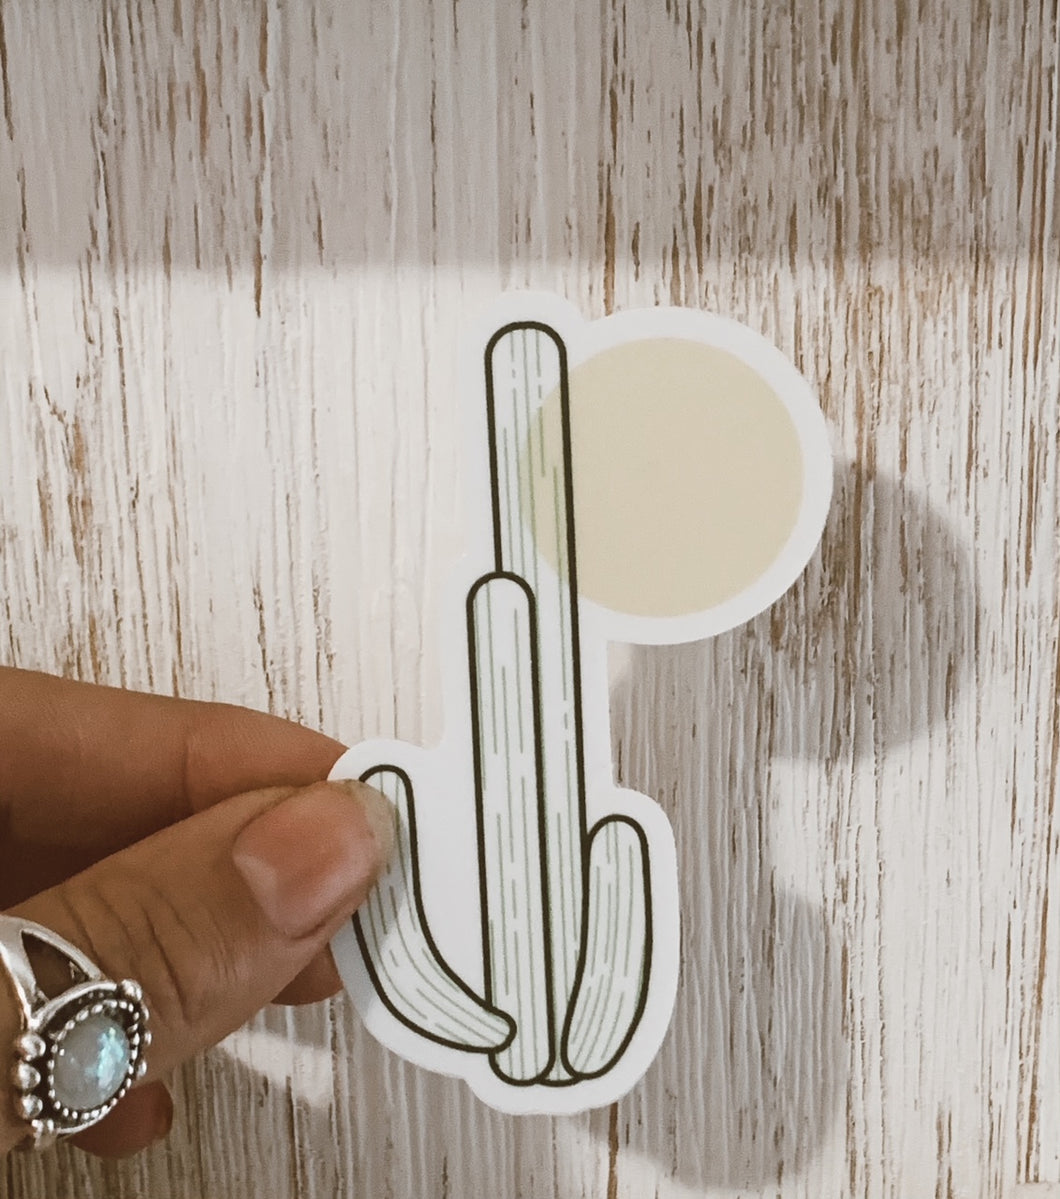 Cactus Stickers